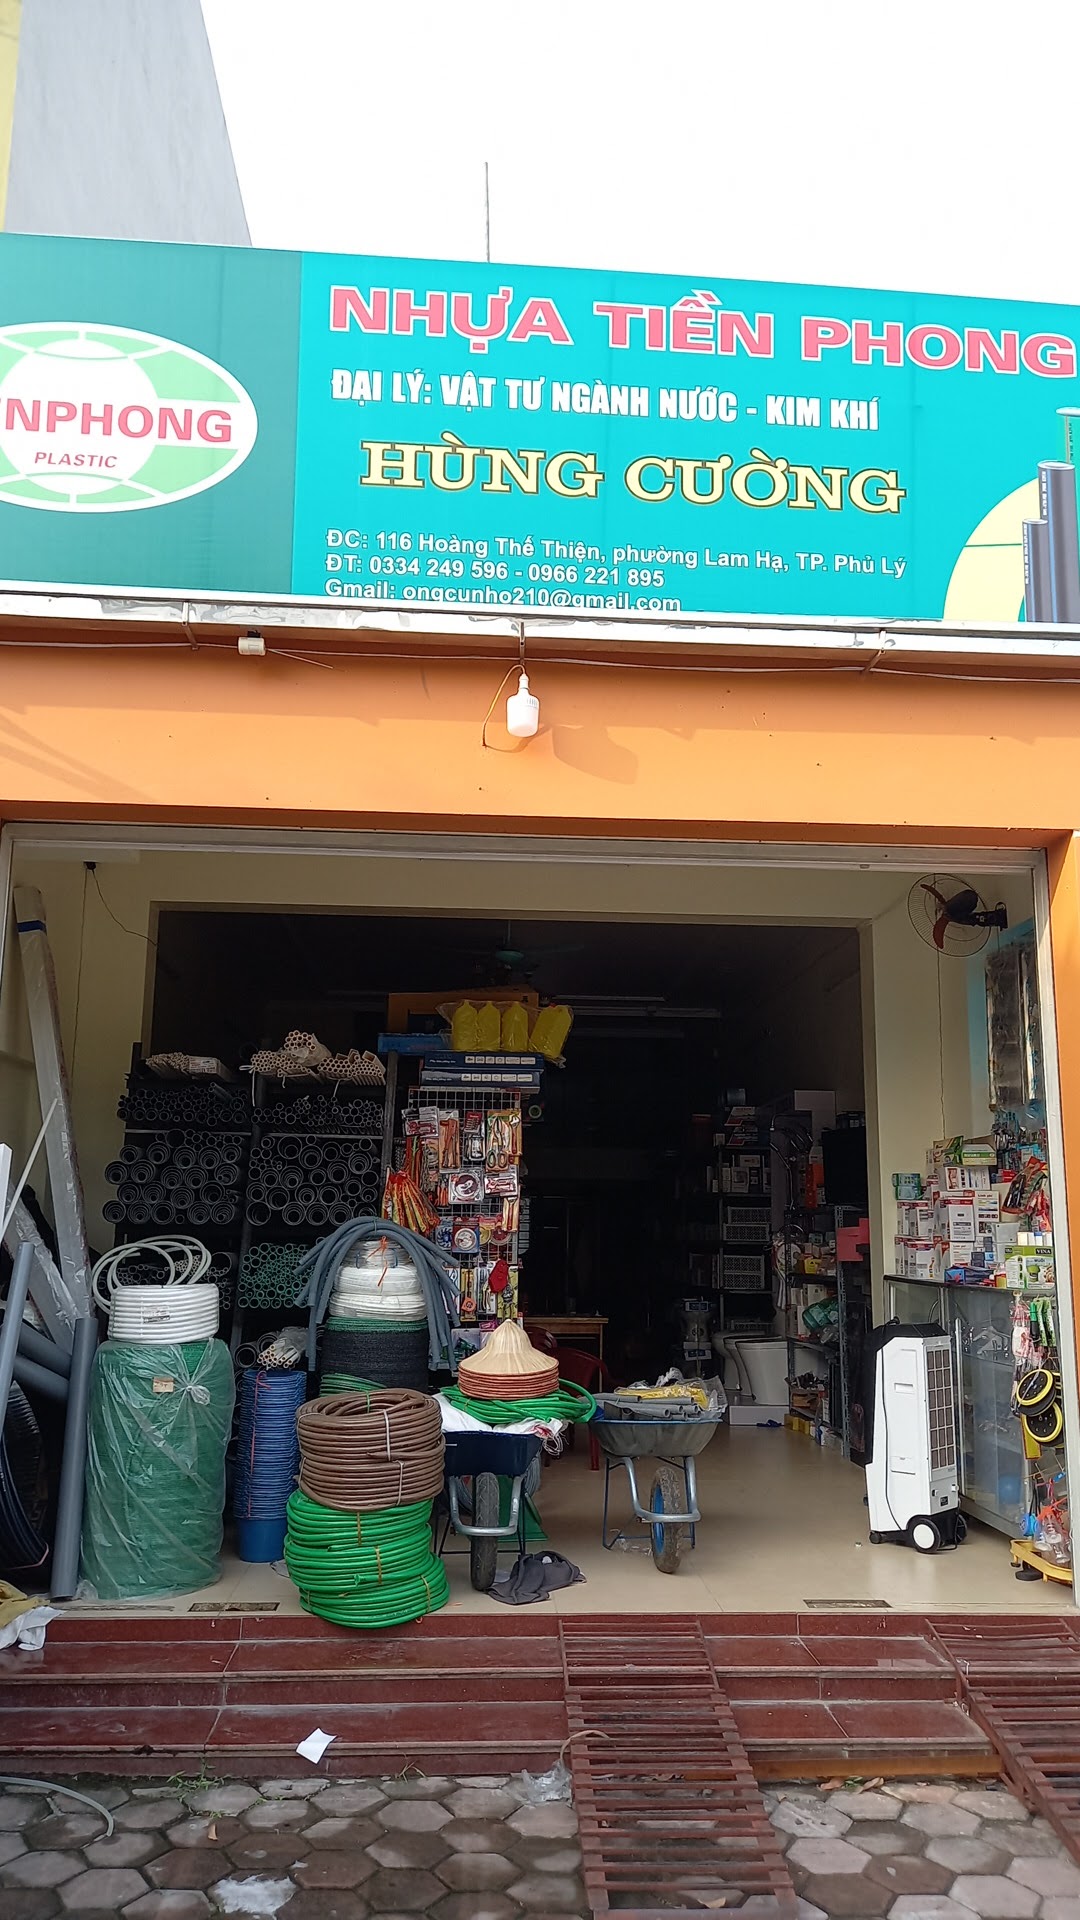 Cửa hàng điện nước Hùng Cường